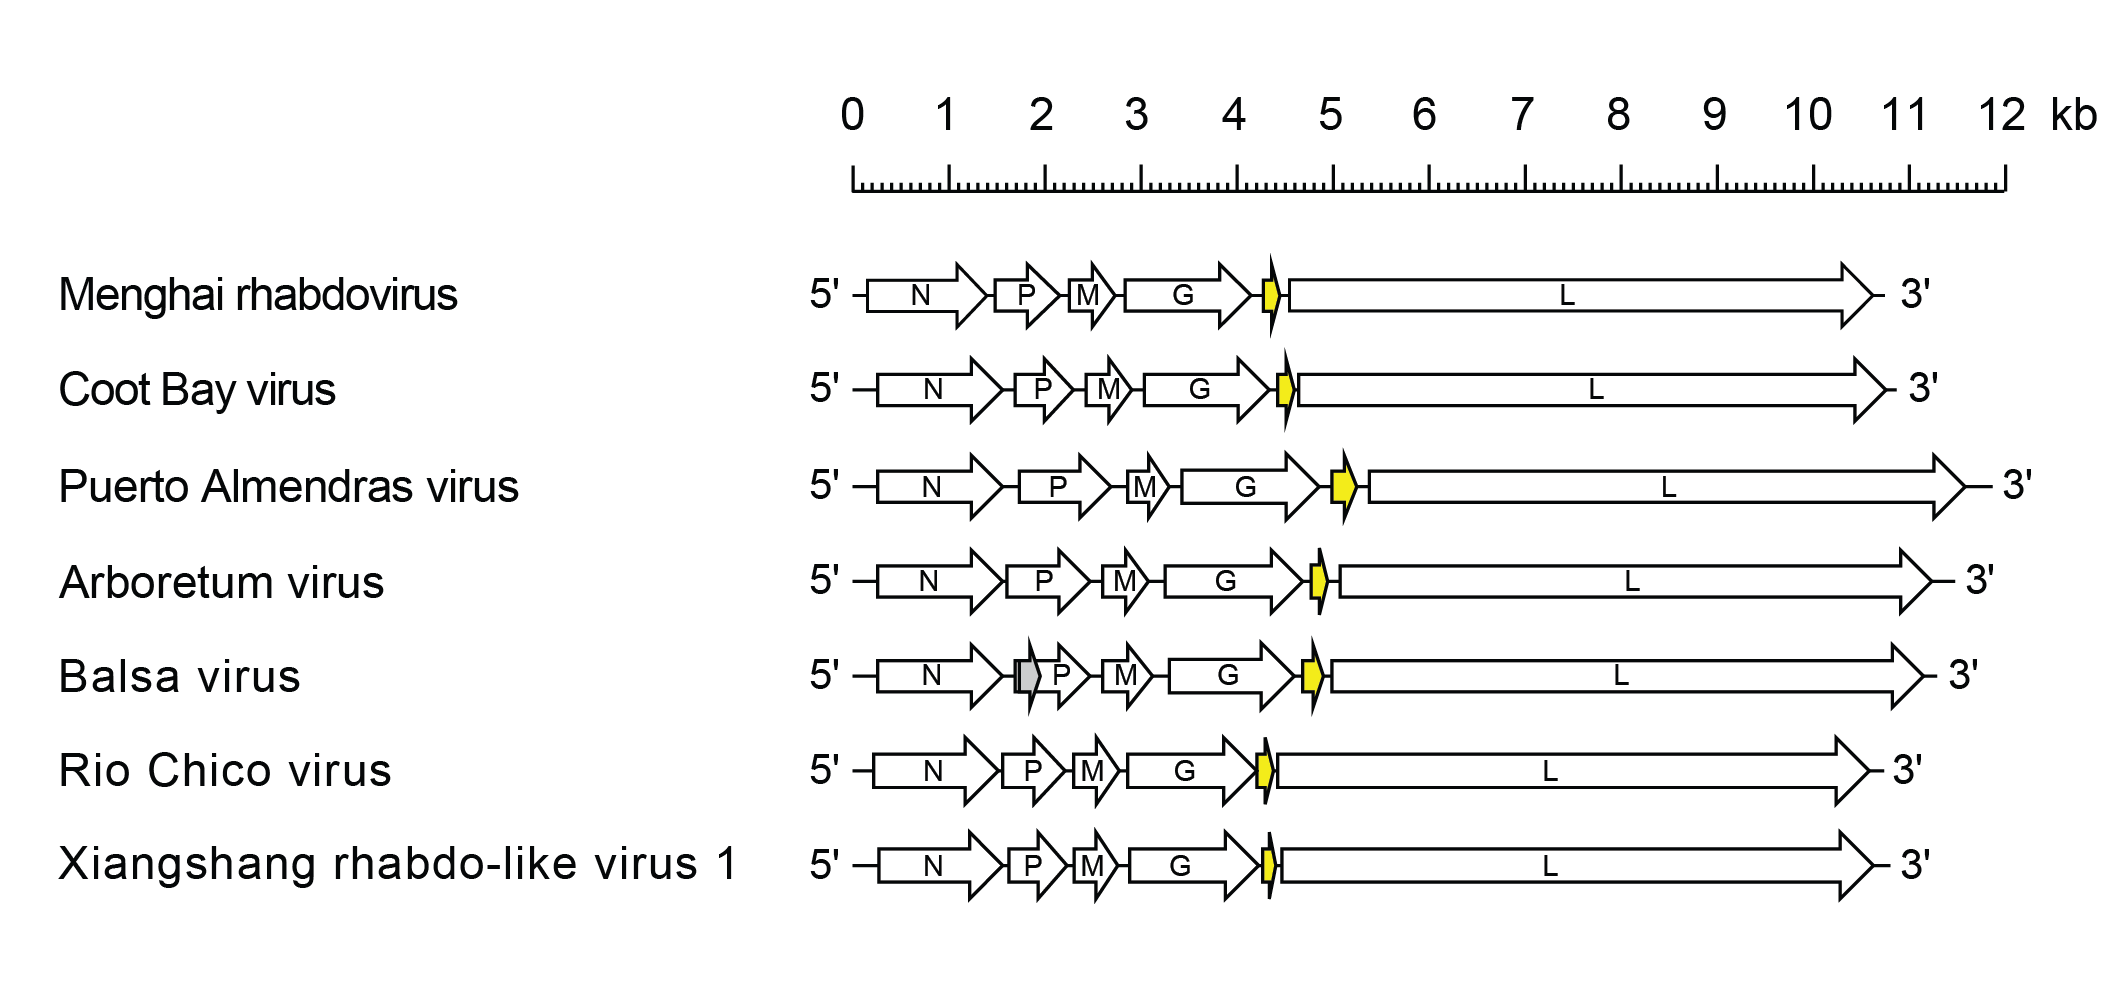 Almendrhavirus genome 